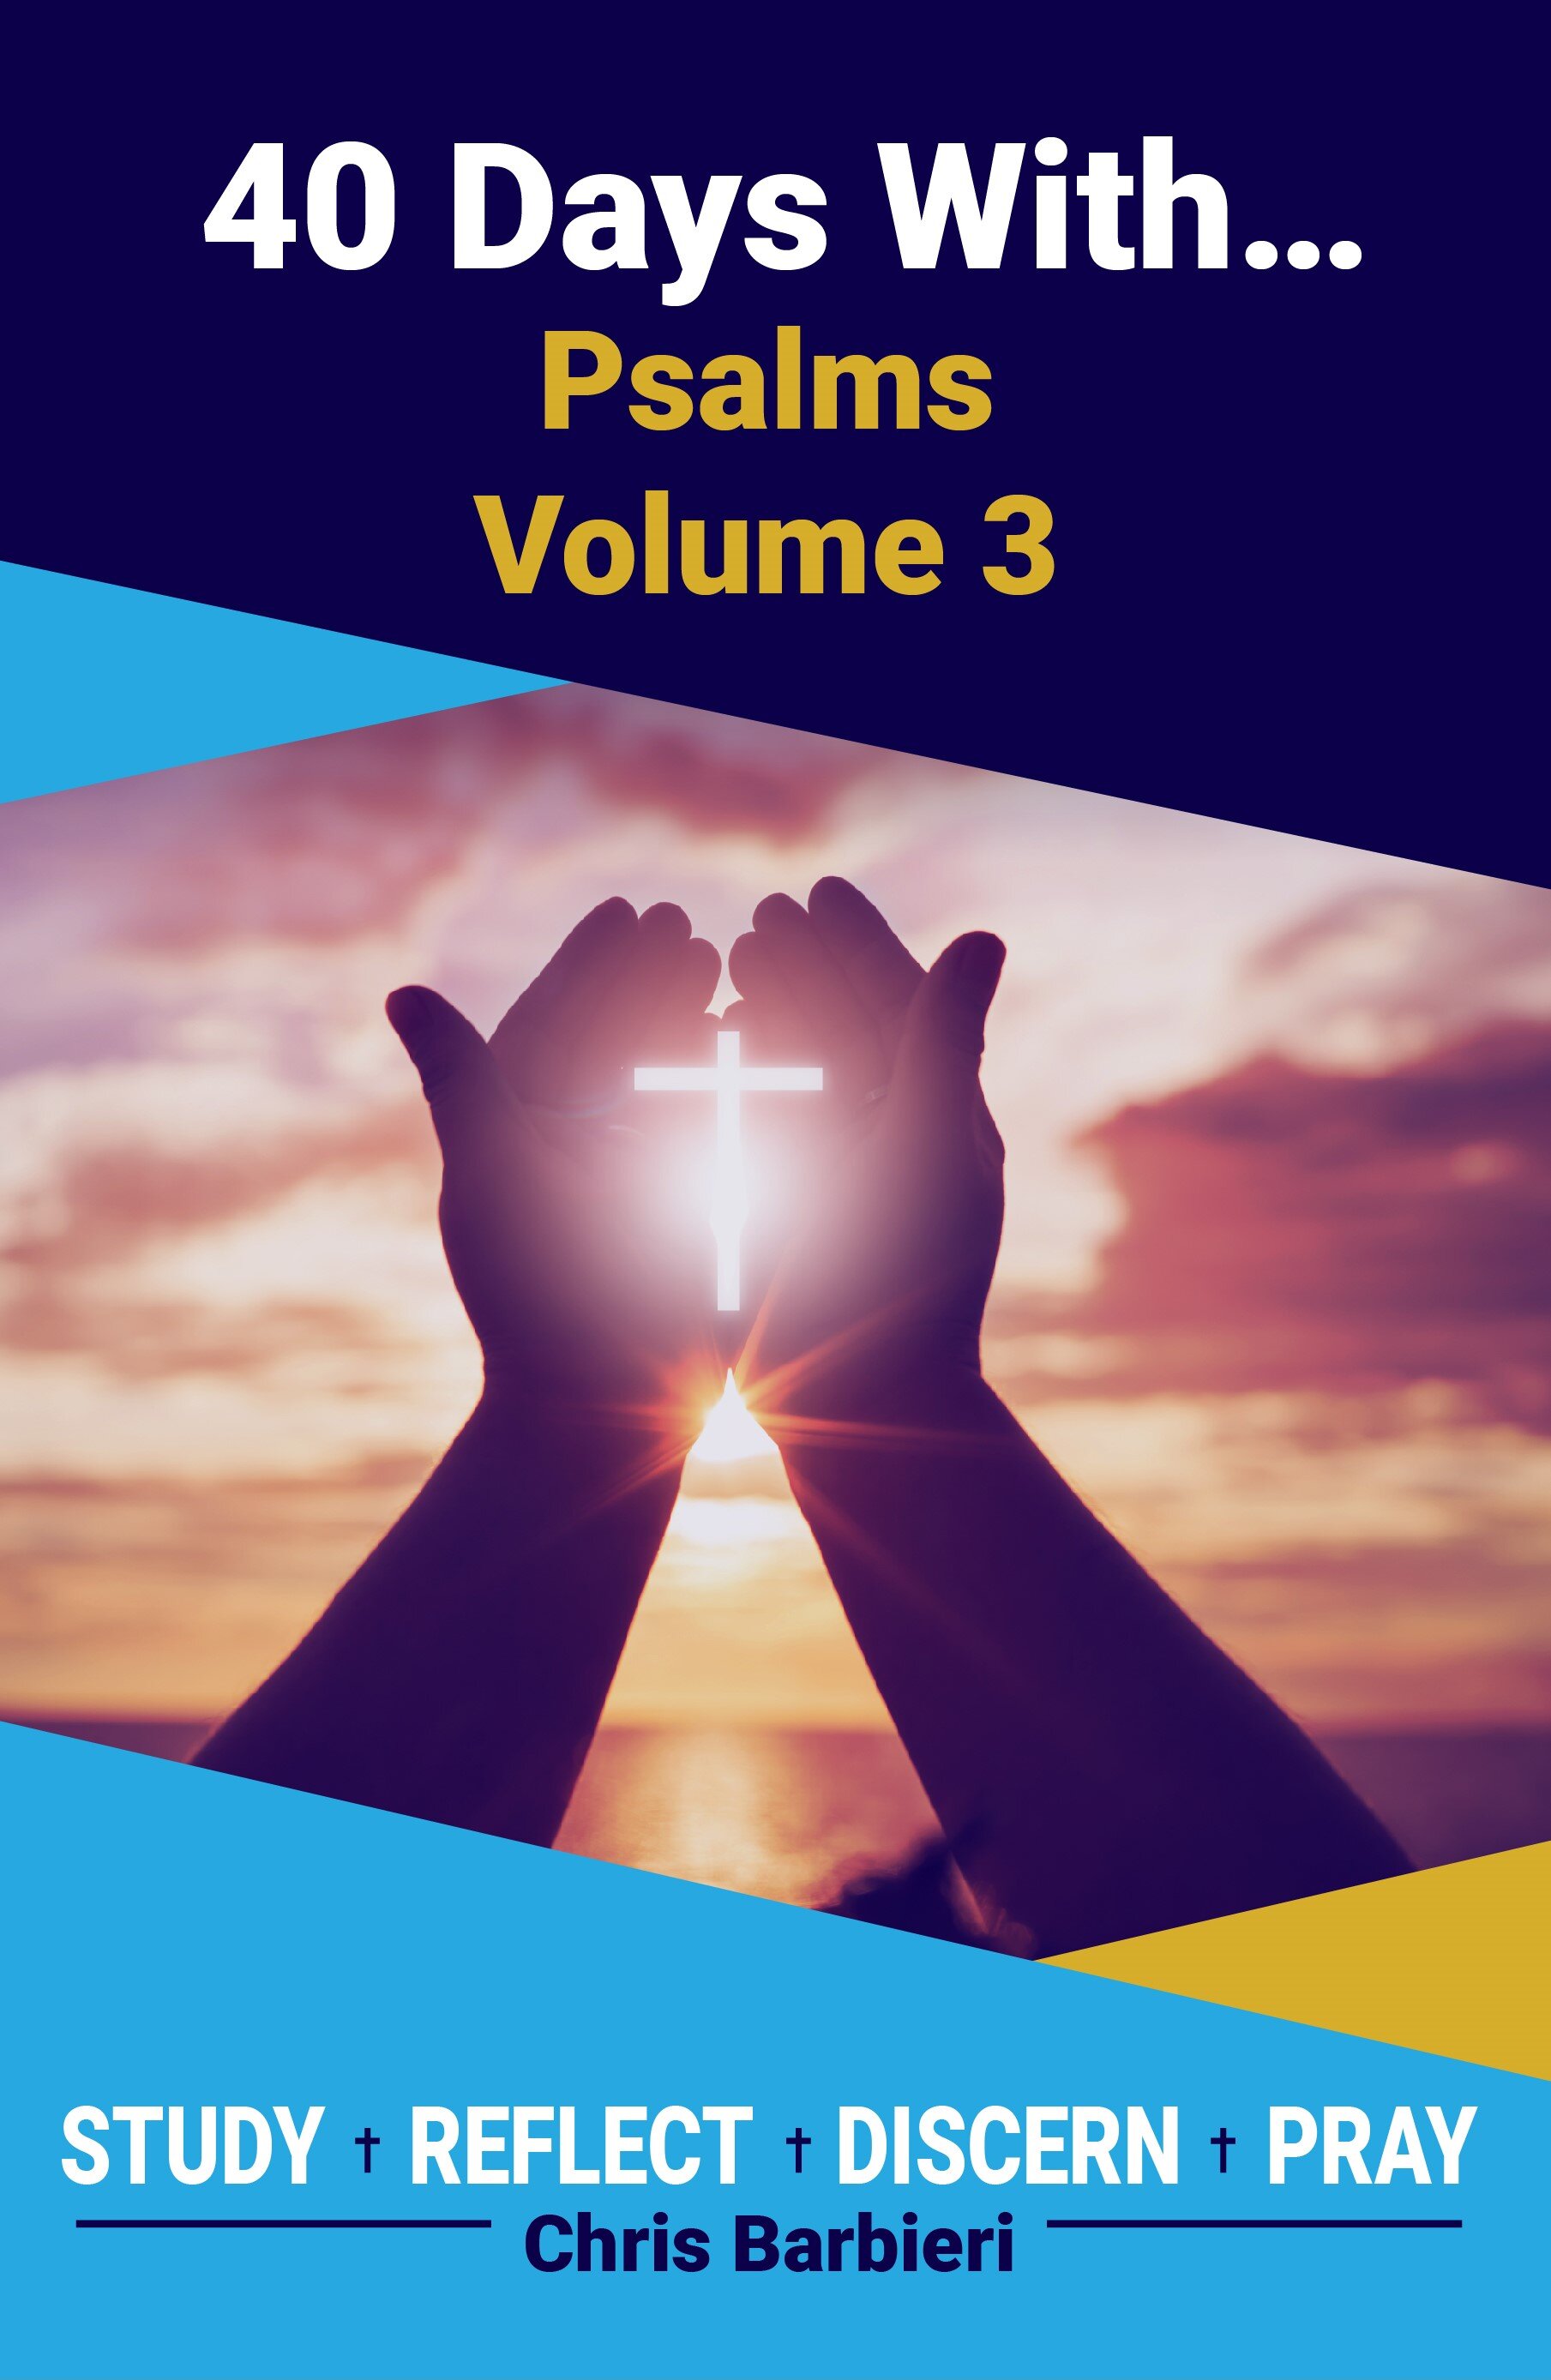 Psalms, Volume 3-01 - Cover - Front.jpg